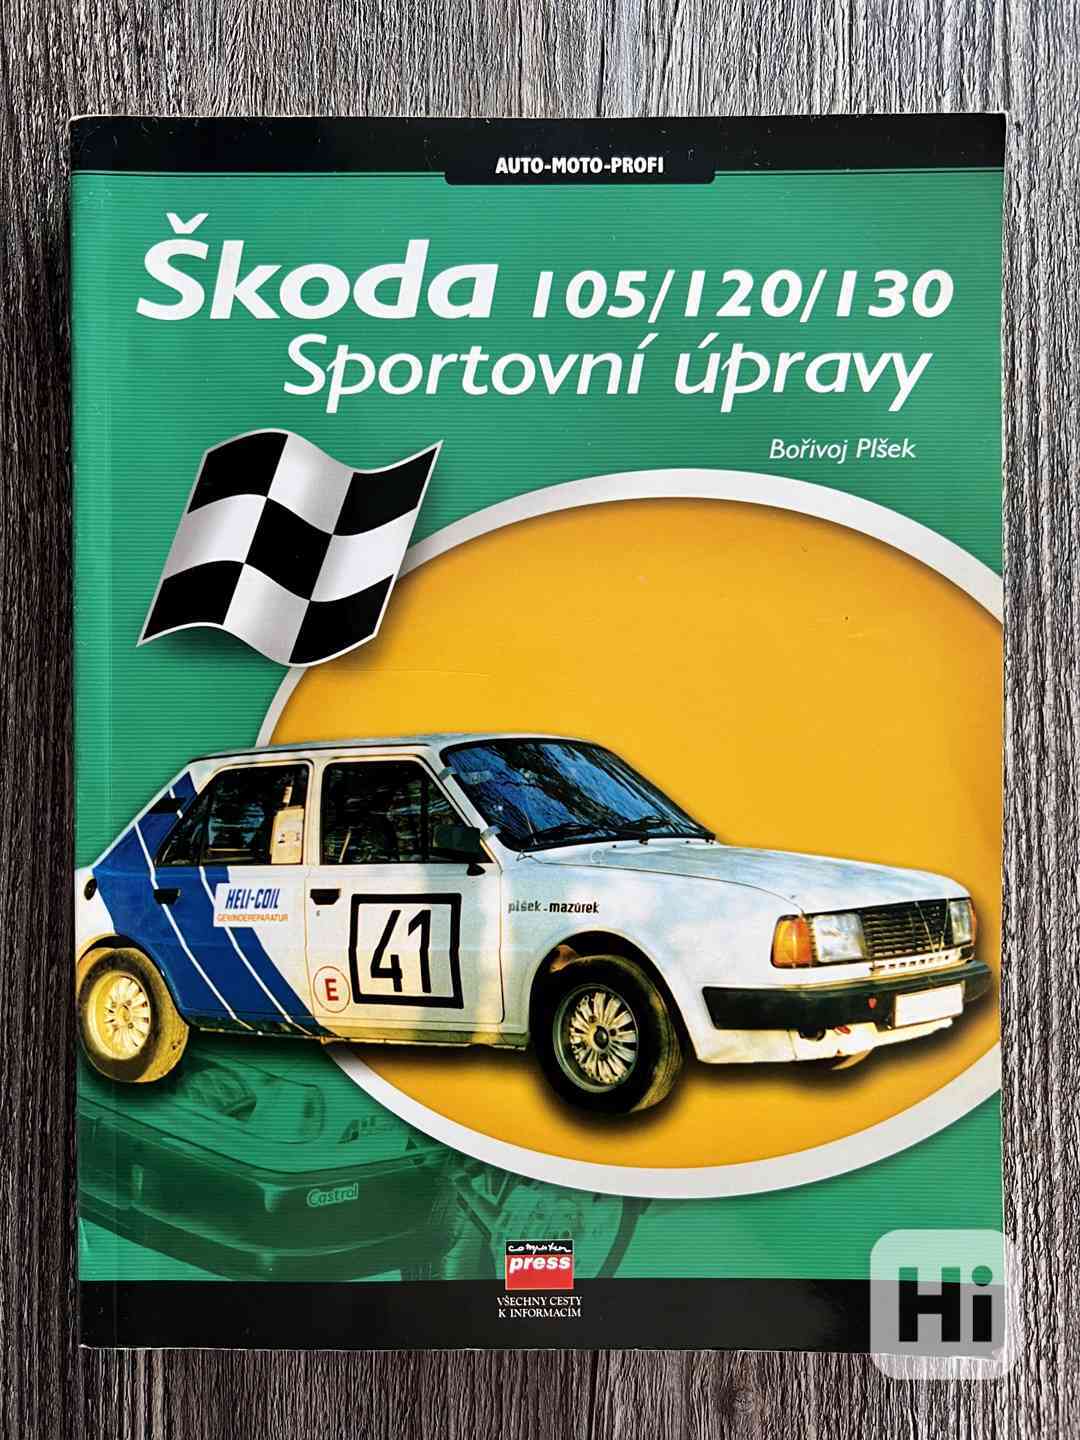 Sportovní úpravy Škoda 105 / 120 / 130 - Bořivoj Plšek - foto 1